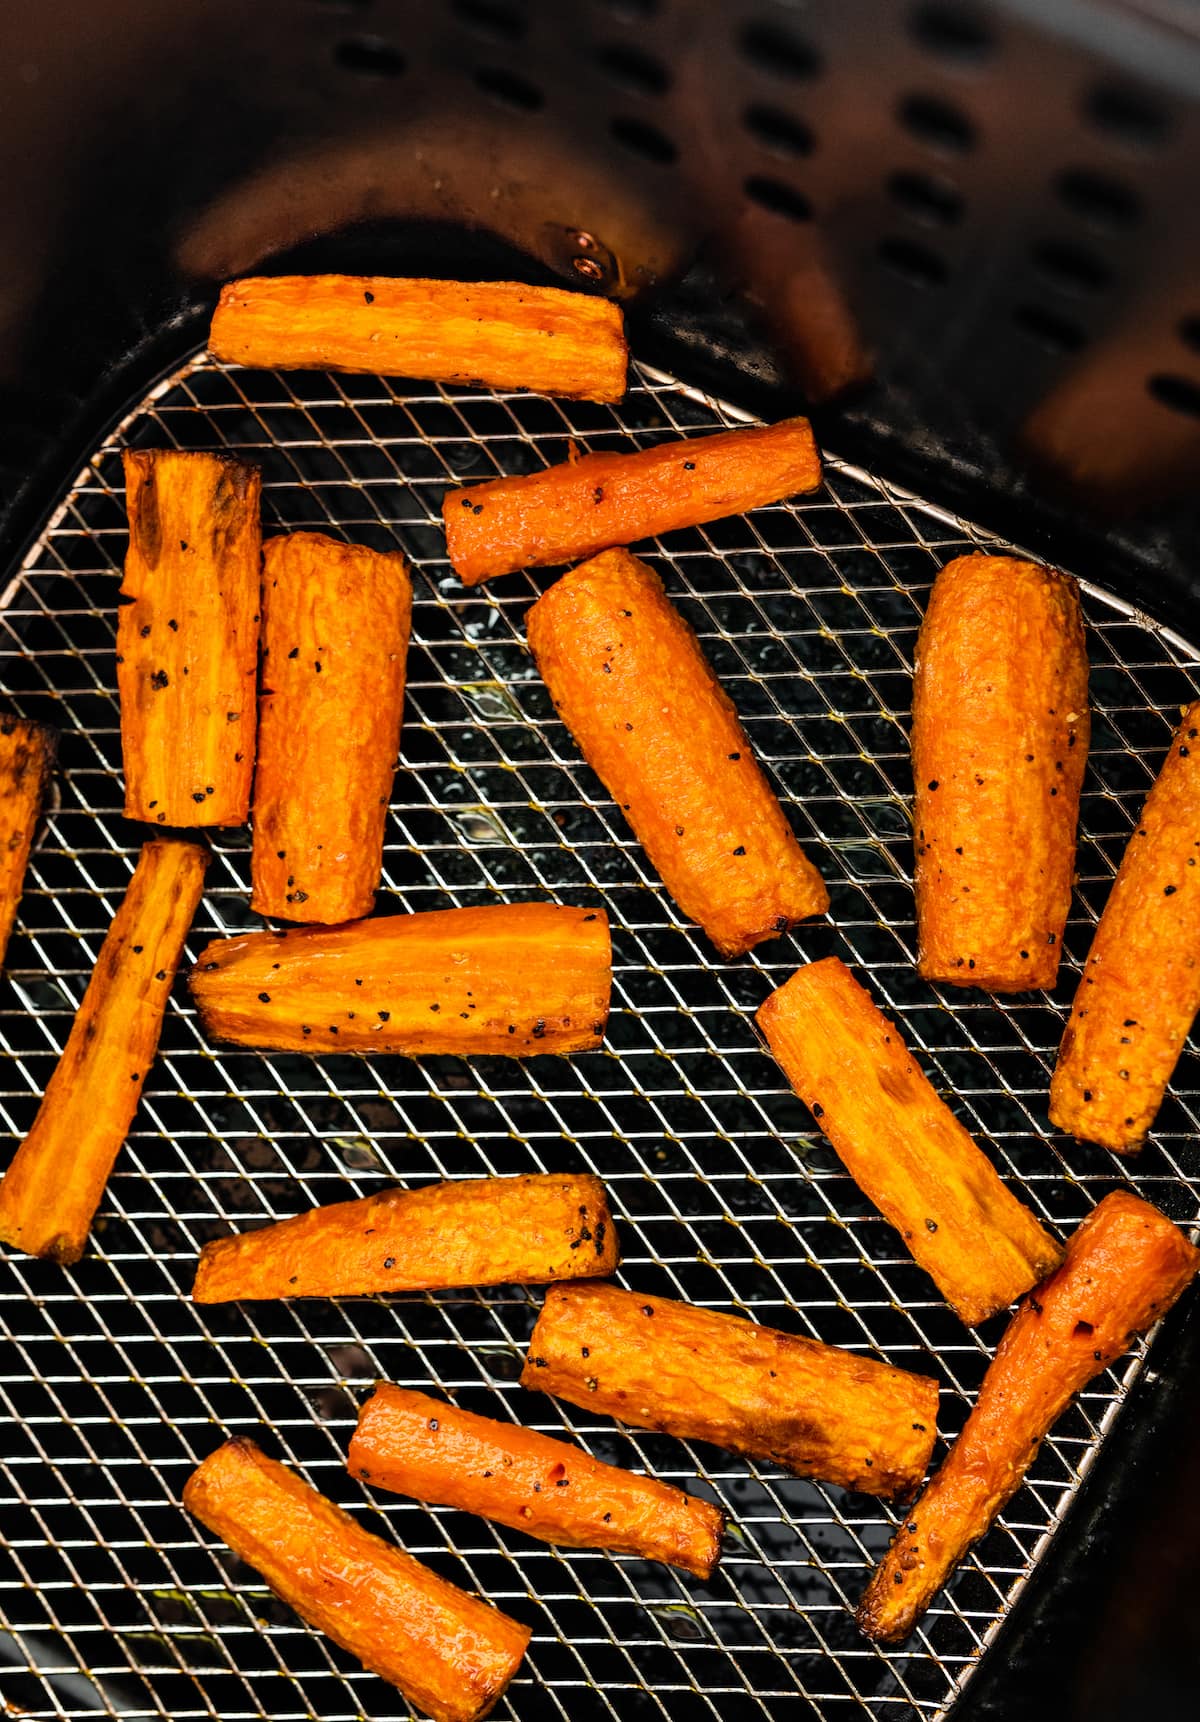 Carrots cut into matchsticks in an air fryer.